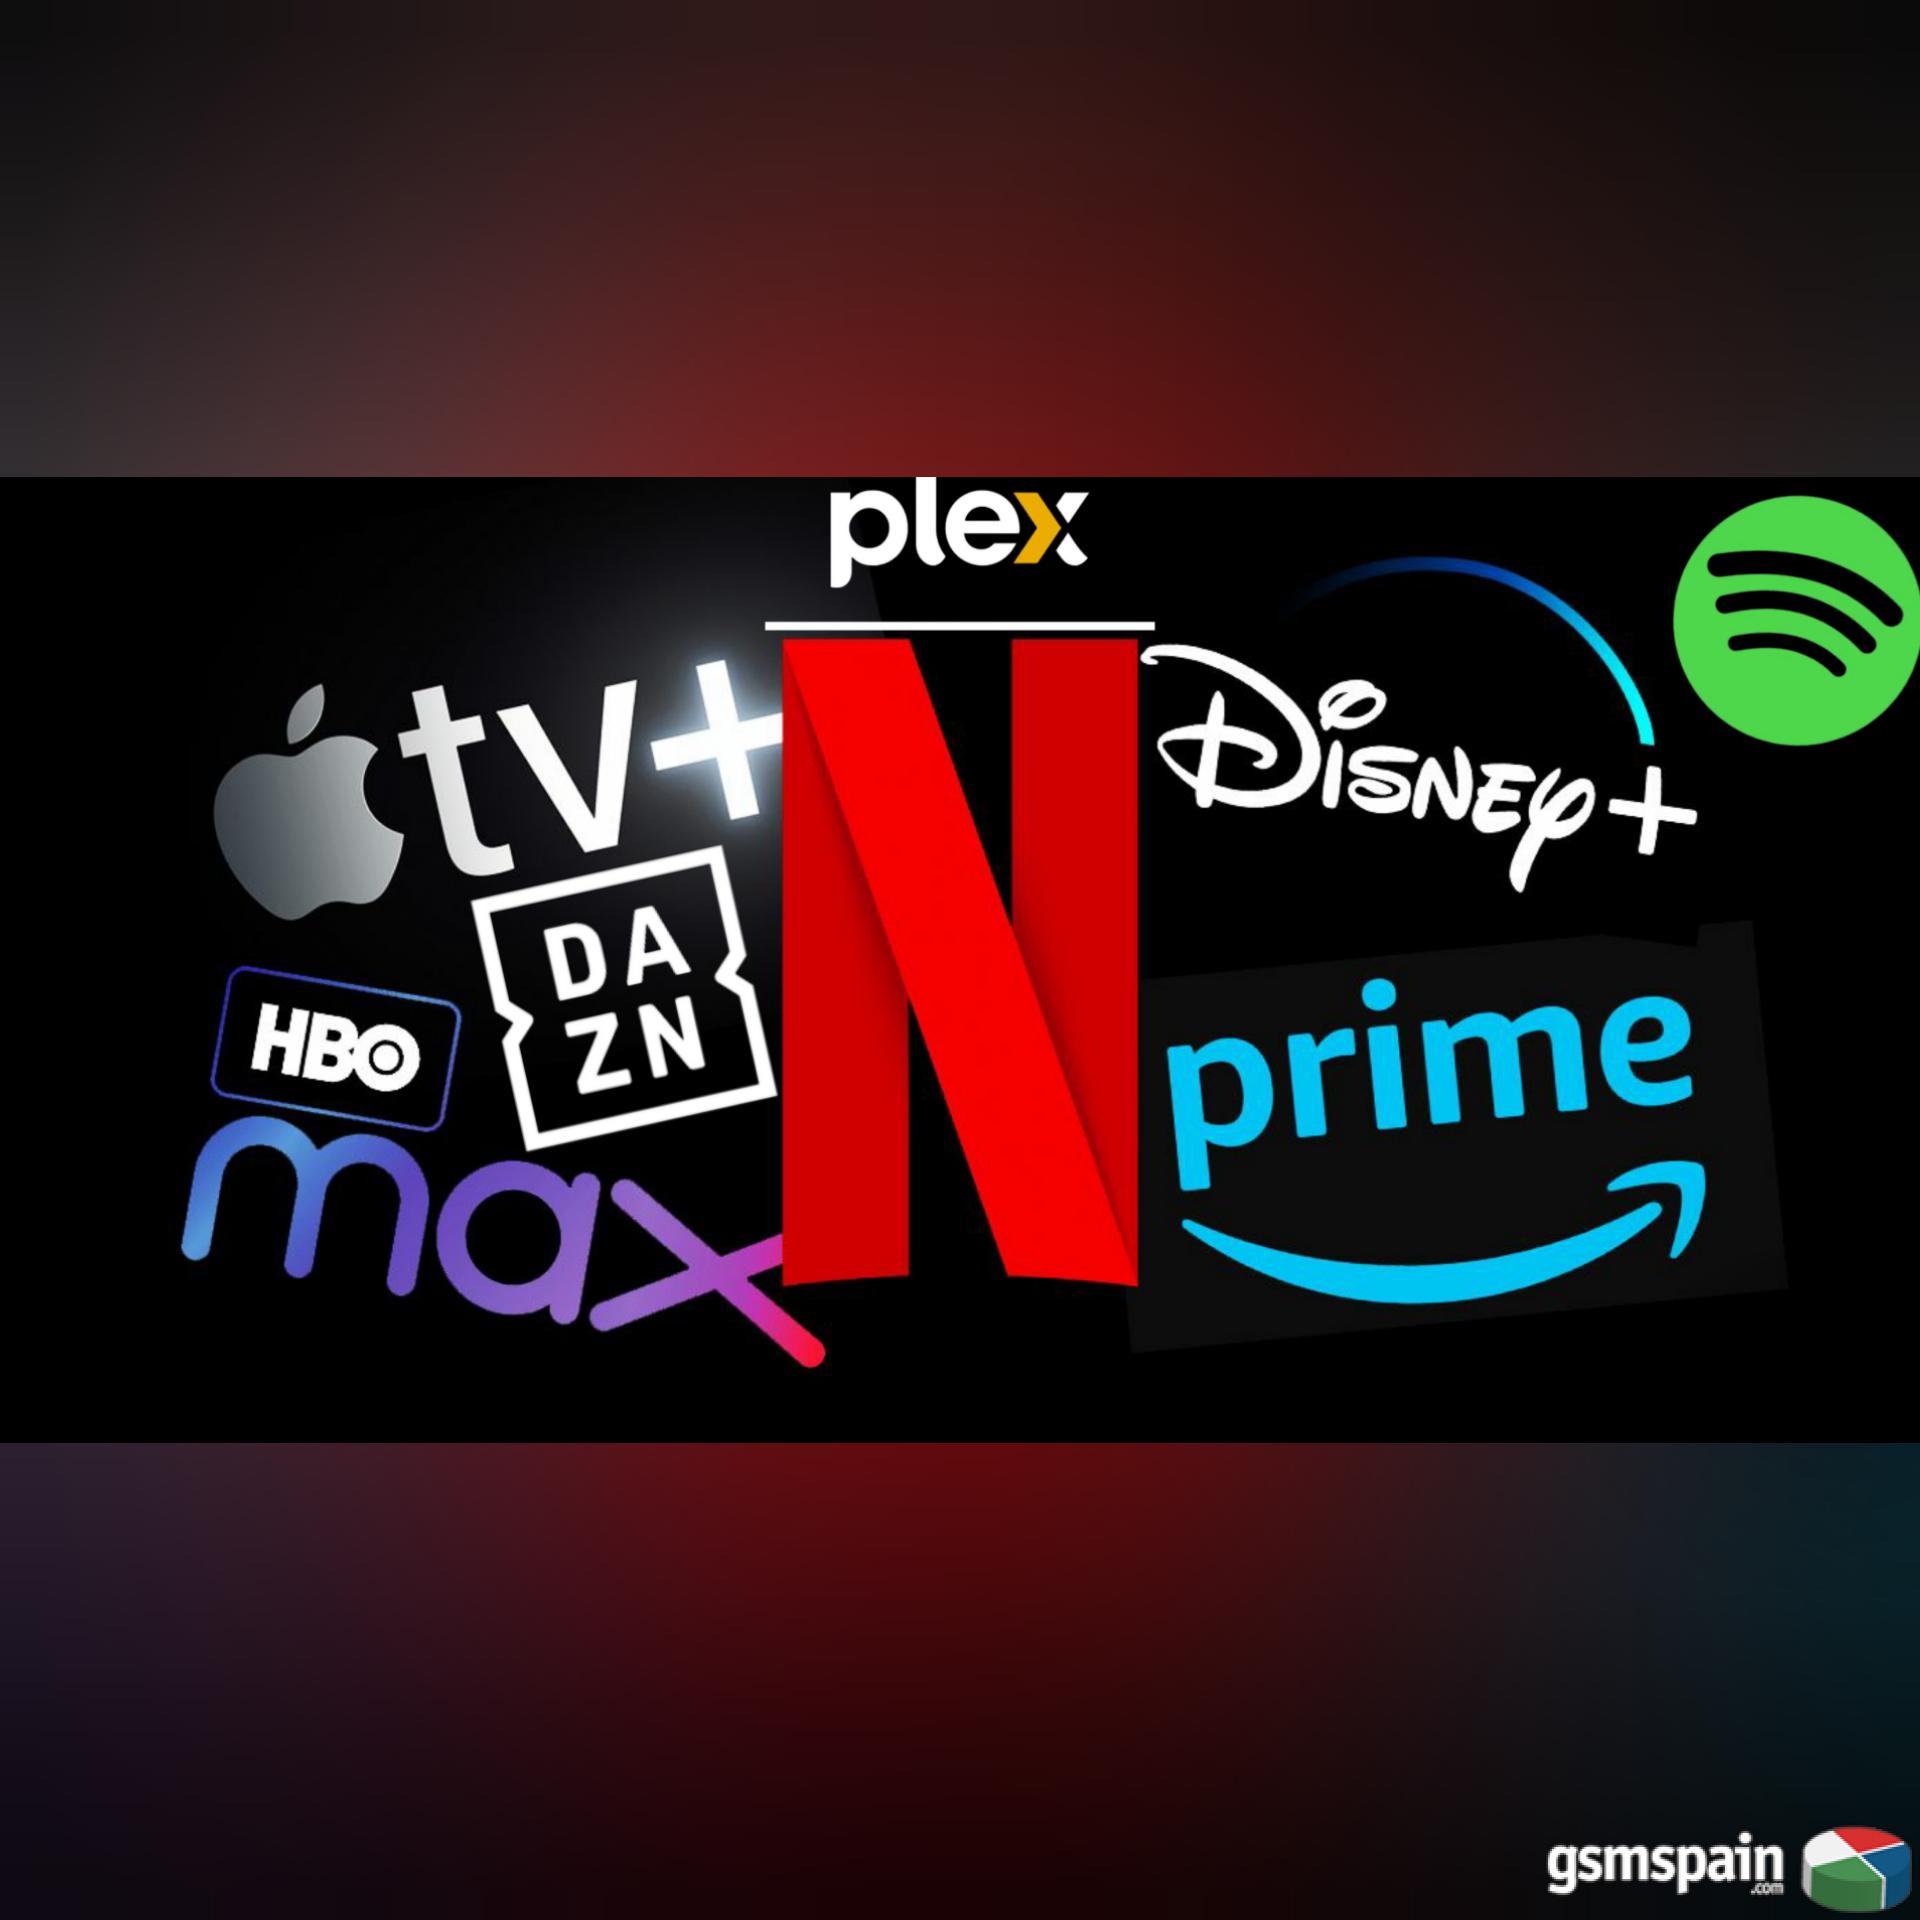 [VENDO] Se vende Netflix,Hbo,Spotify,Disney+ y mas.Prueba nuestro servicio con garantia.